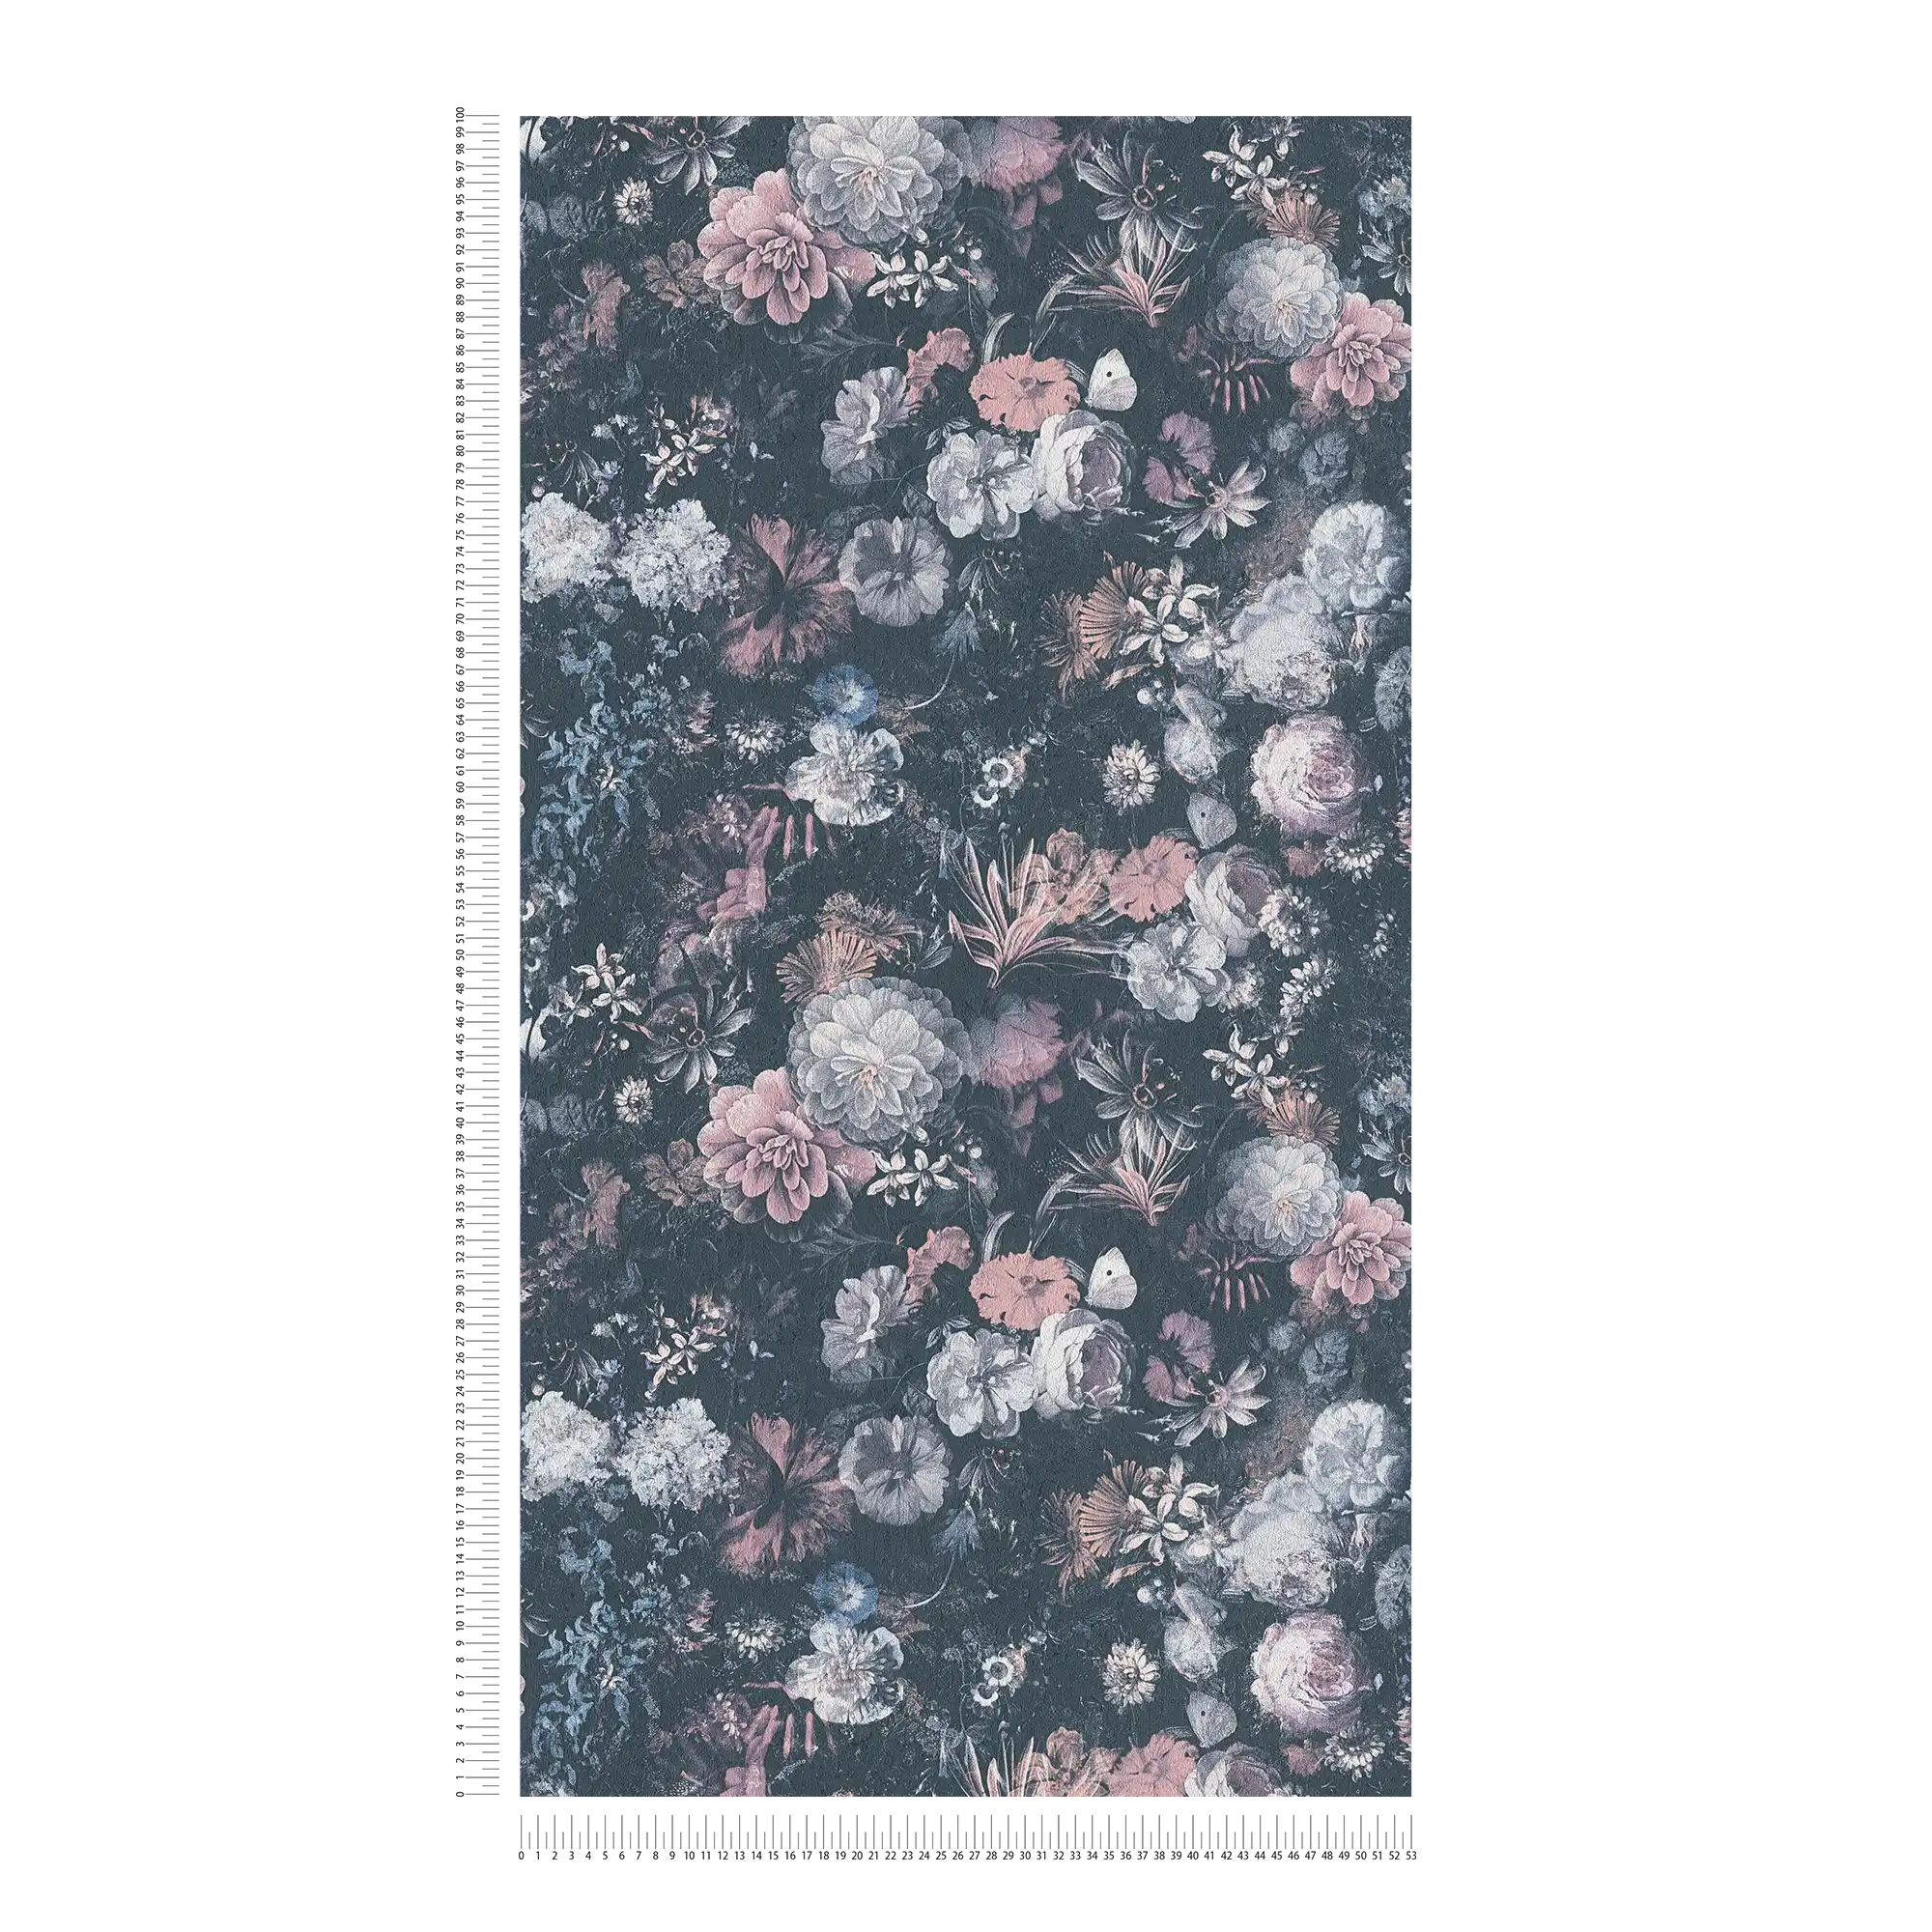             Carta da parati floreale con effetto texture - Grigio, rosa
        